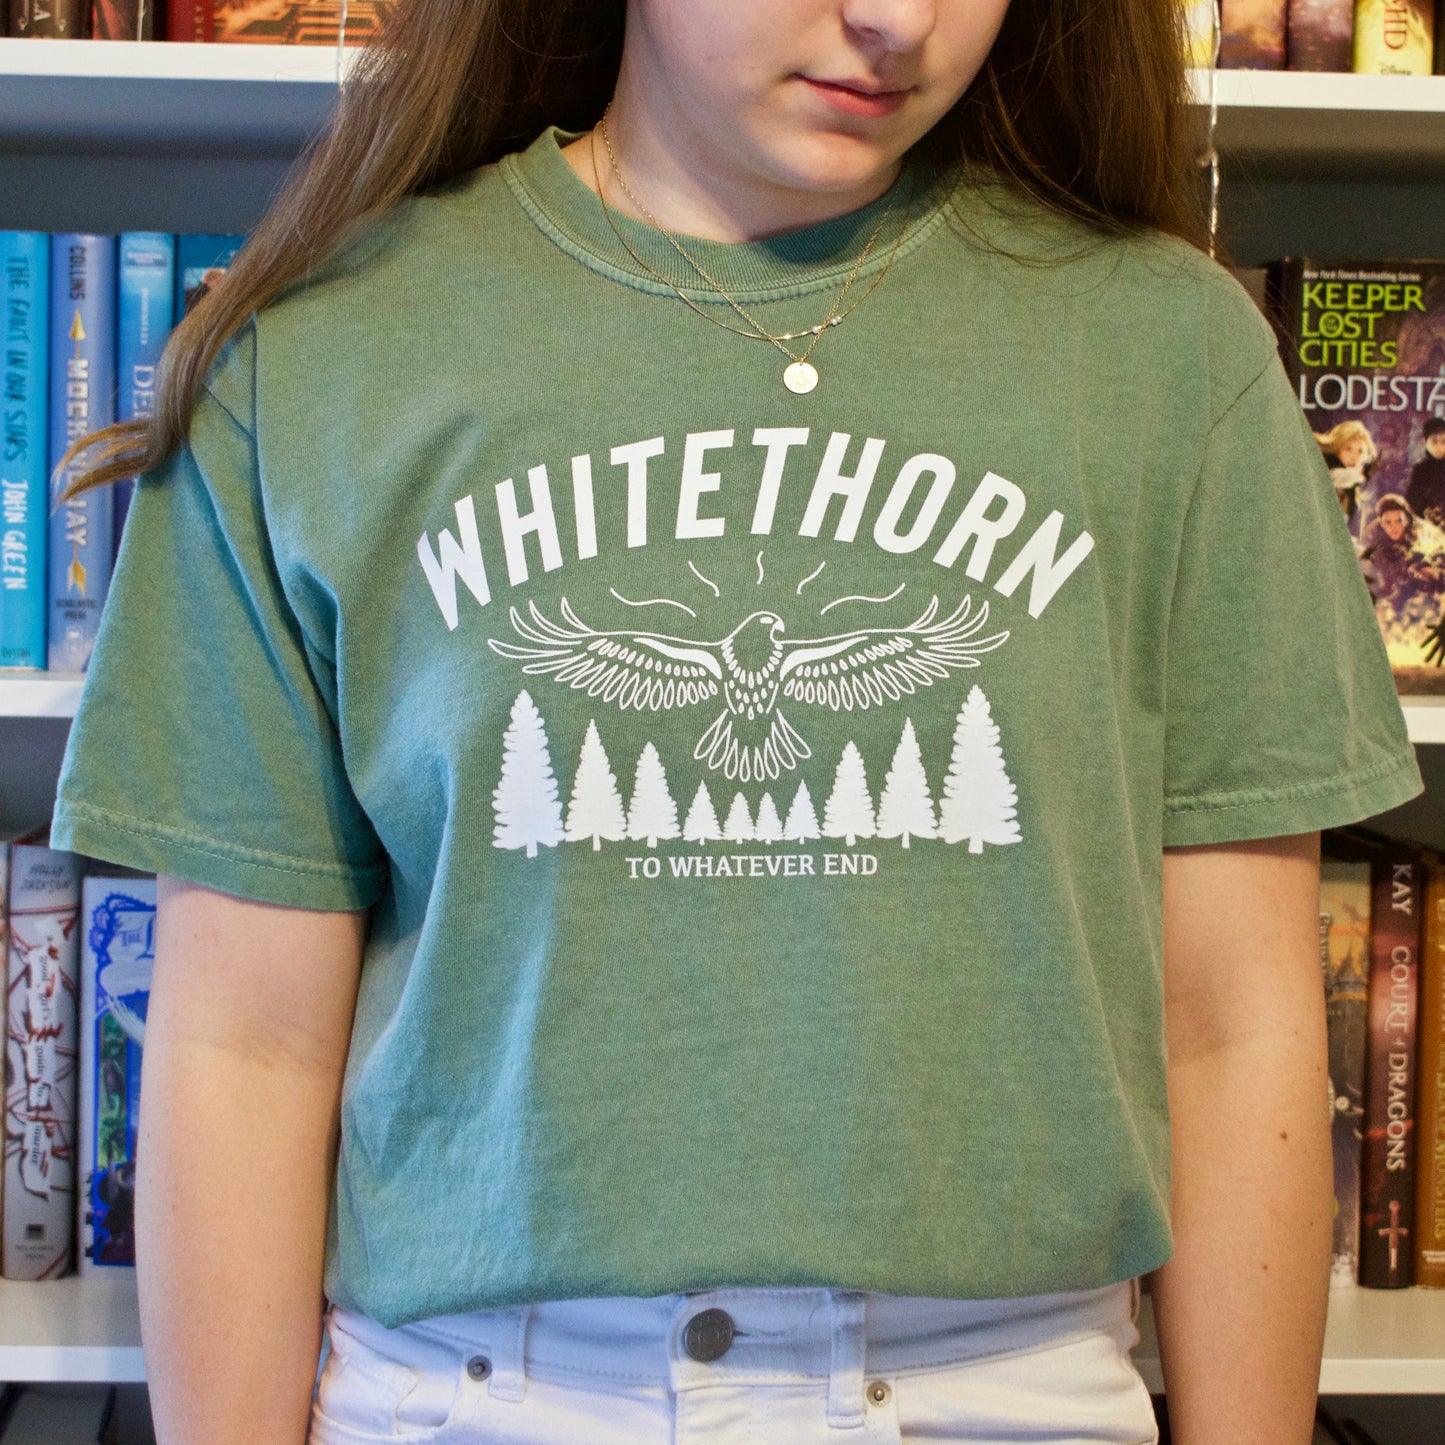 WHITETHORN T-shirt